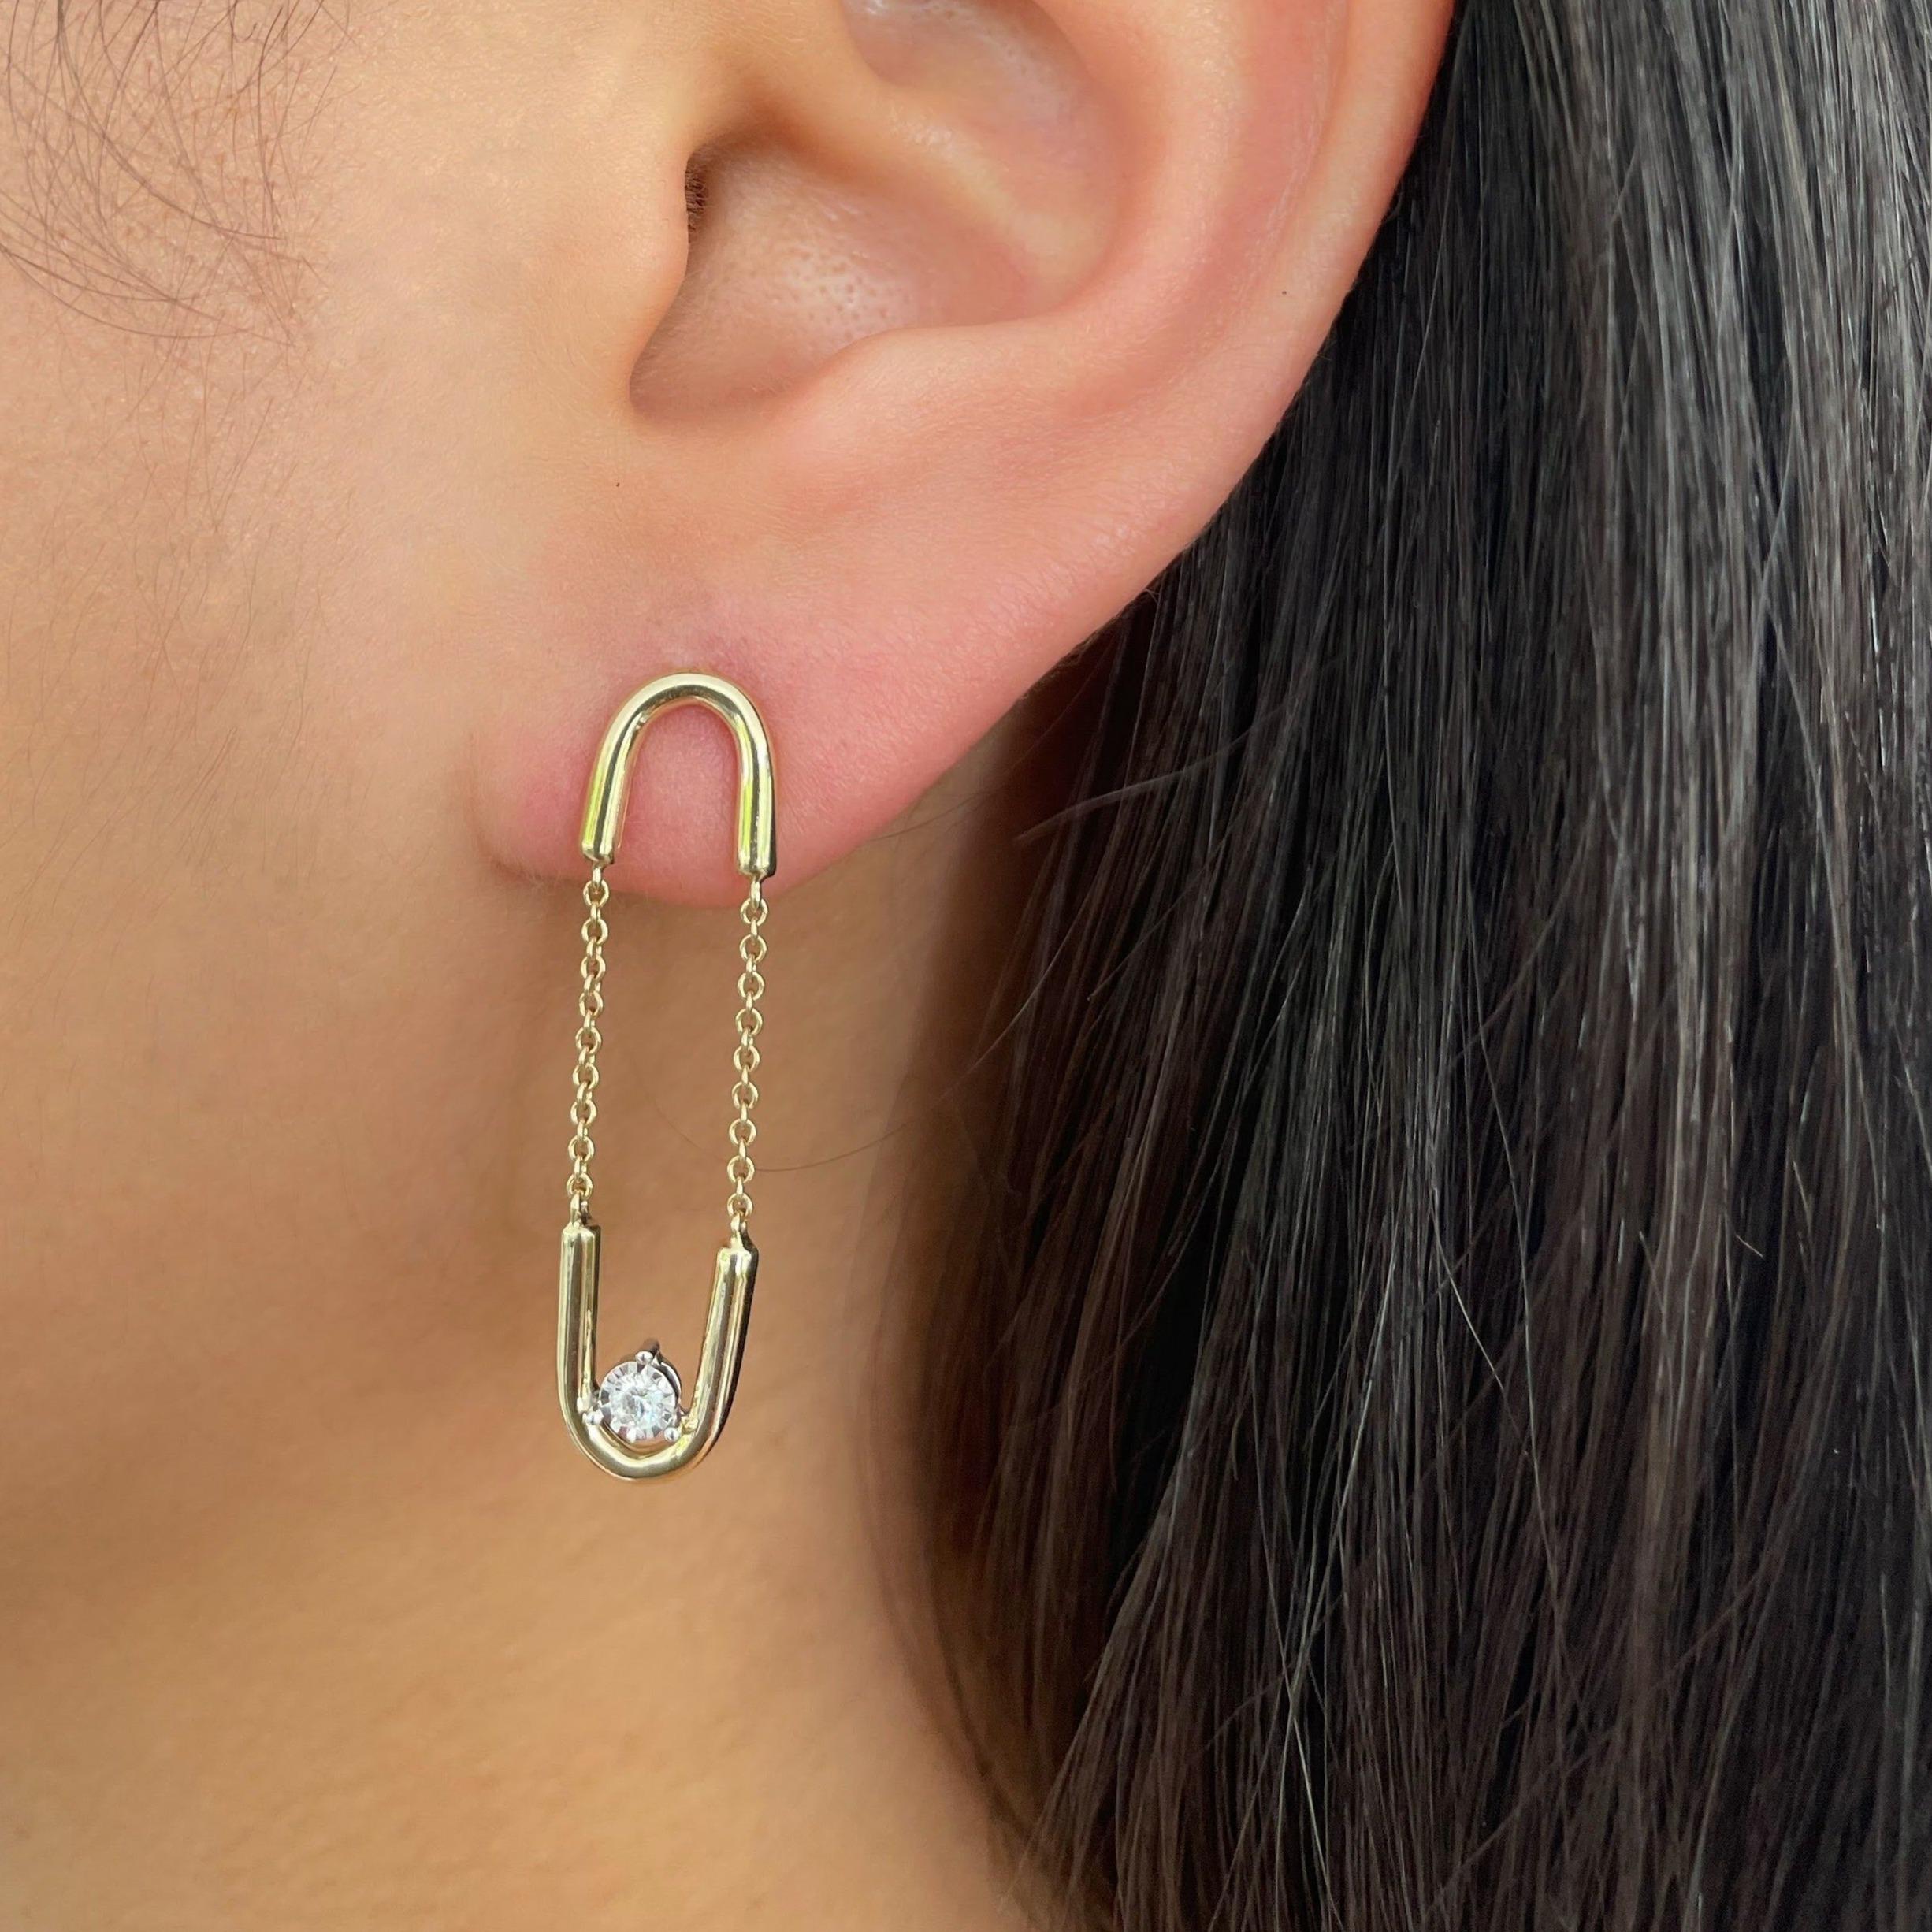 Boucles d'oreilles pendantes en or jaune 14K avec diamants et maillons de chaîne. 
Poids du diamant : 0,07ct
Qualité du diamant : couleur H, pureté SI